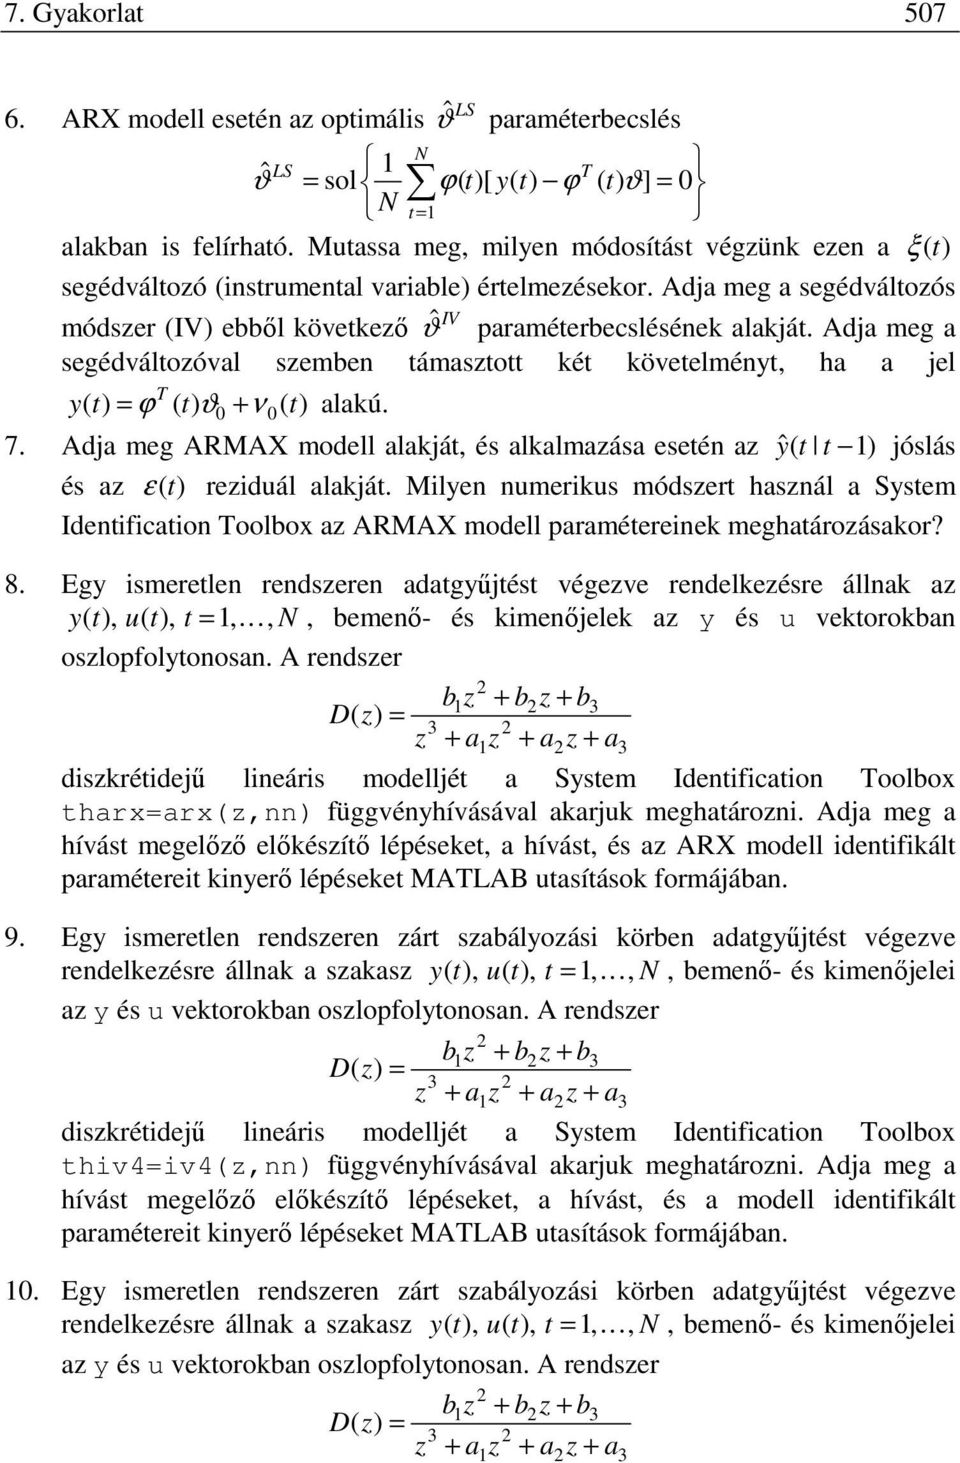 Adja meg ARMAX modell alakjá és alkalmaása eseén a ˆ jóslás és a ε reiduál alakjá. Milen numerikus módser hasnál a Ssem Idenificaion oolbox a ARMAX modell paraméereinek meghaároásakor? 8.